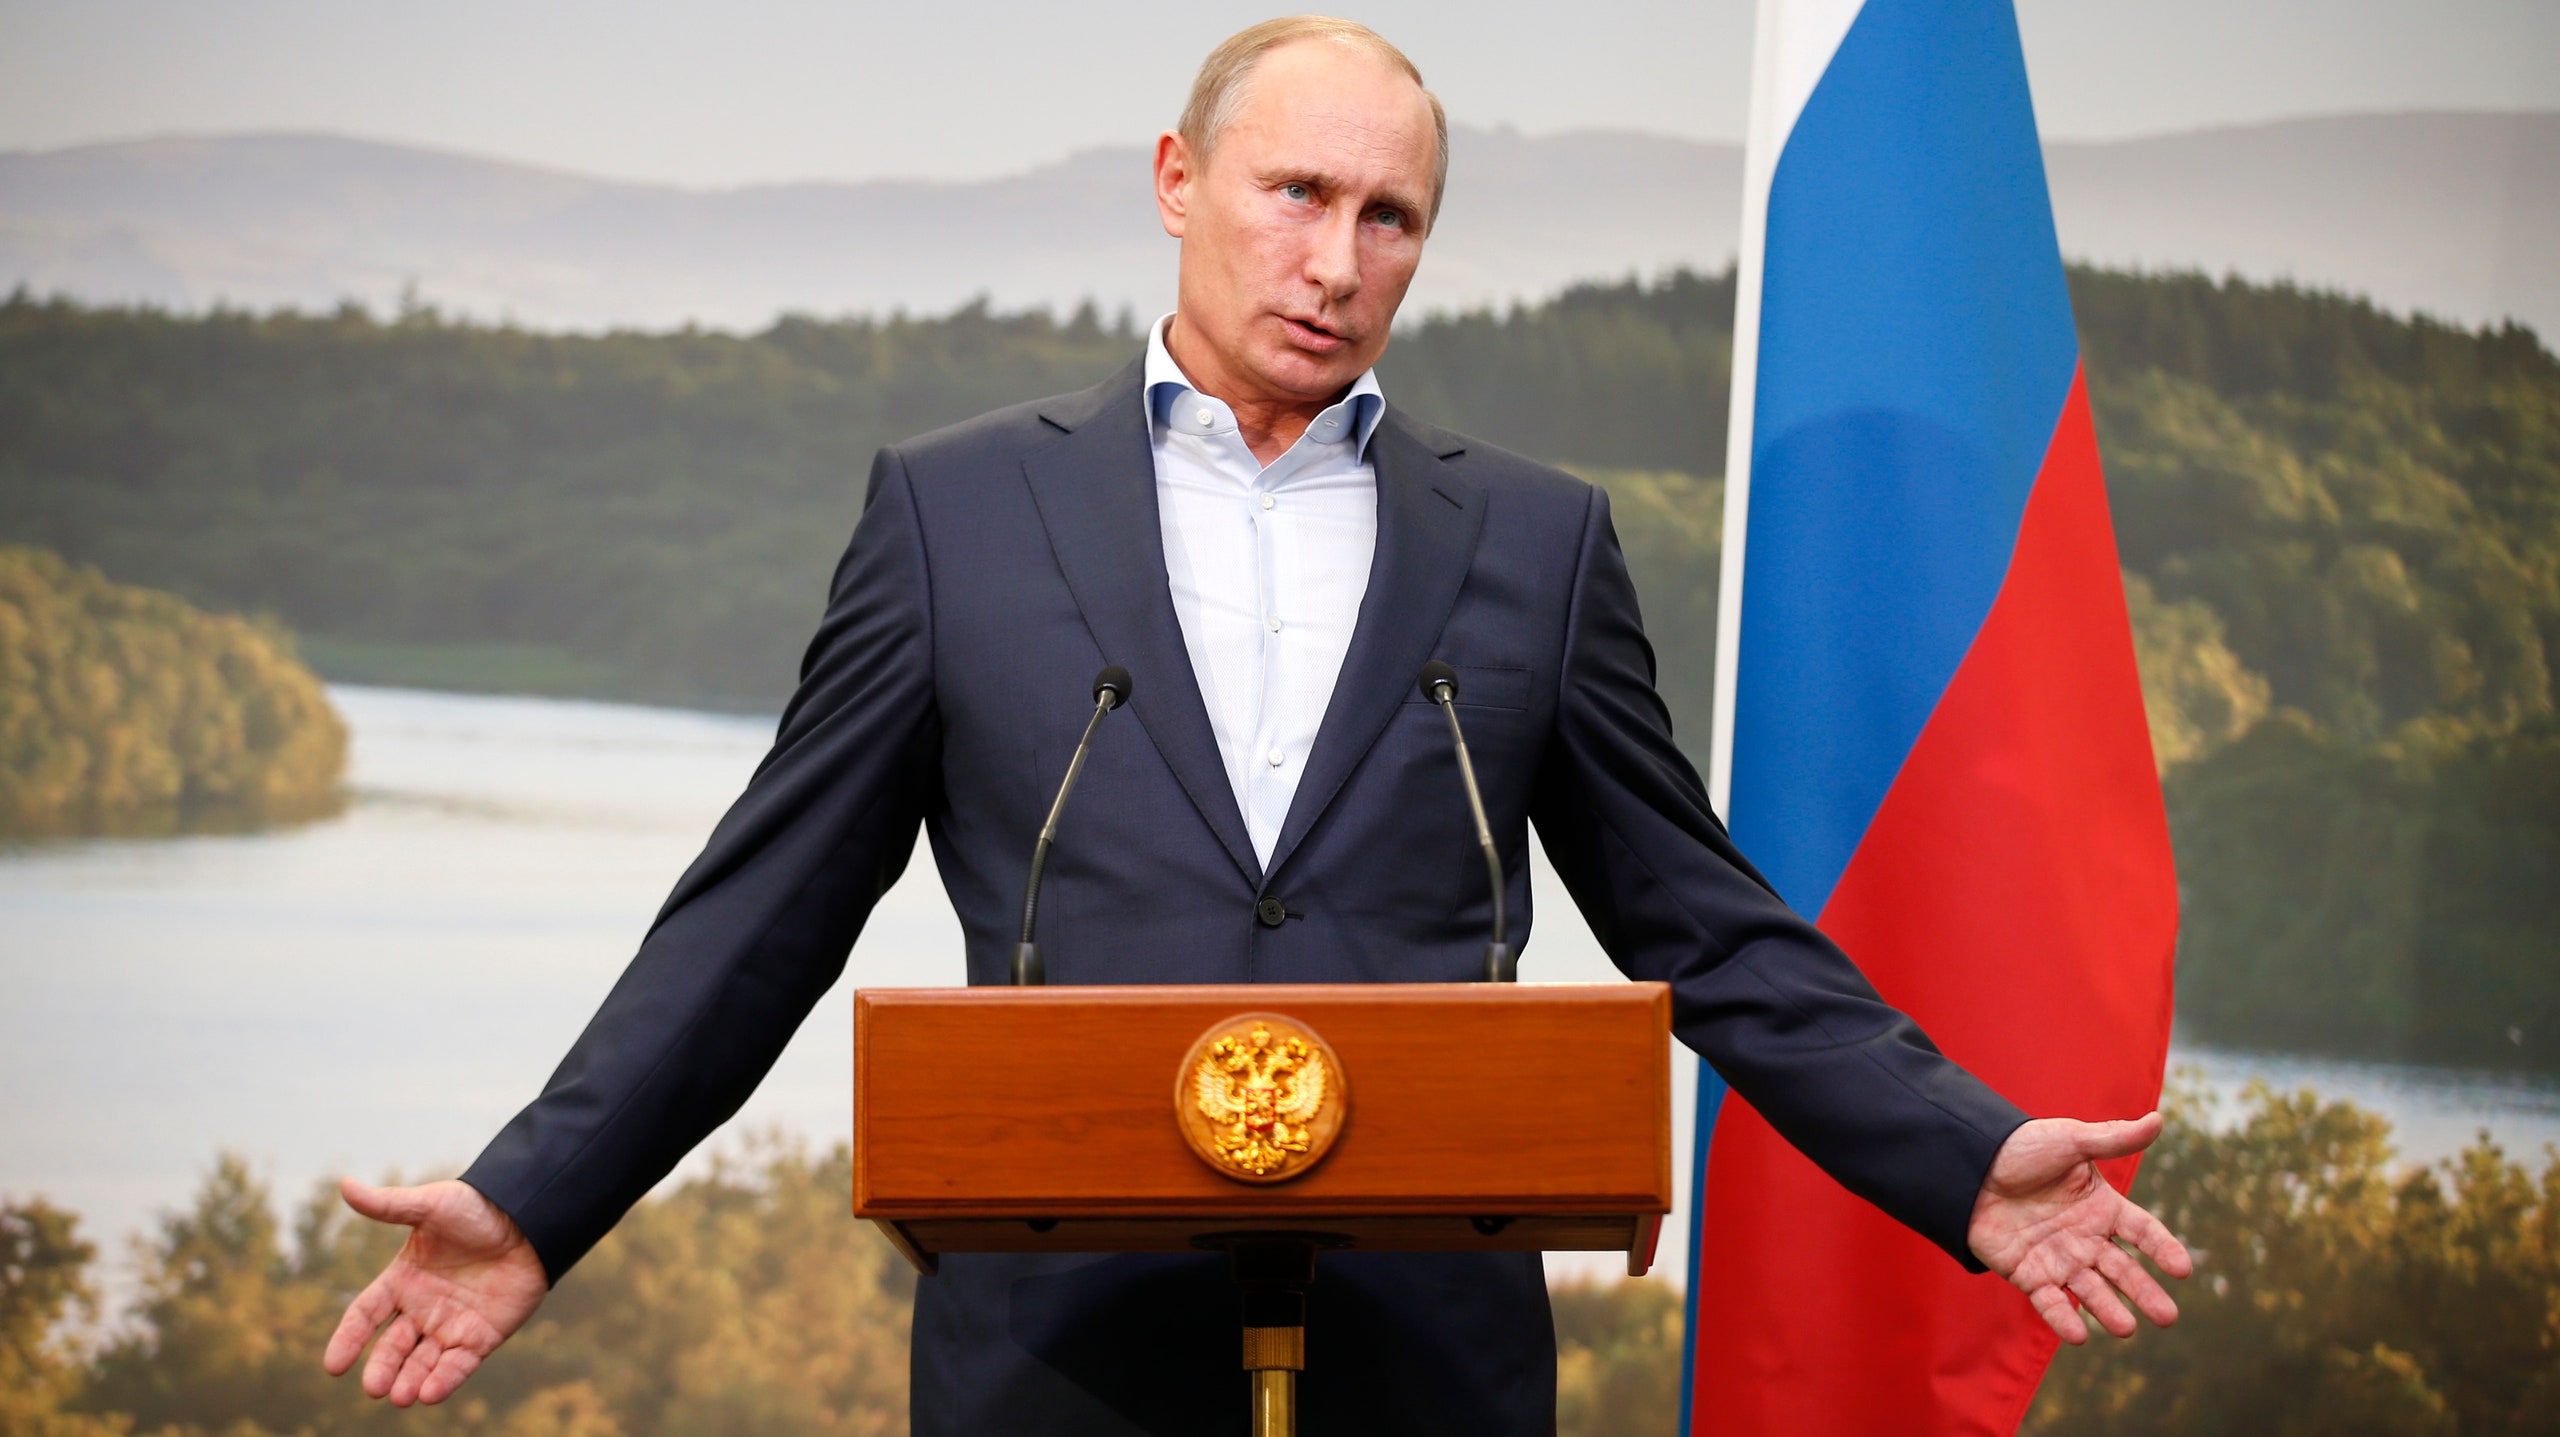 Владимир Путин и Меган Маркл претендуют на звание «Человек года» по версии журнала Time